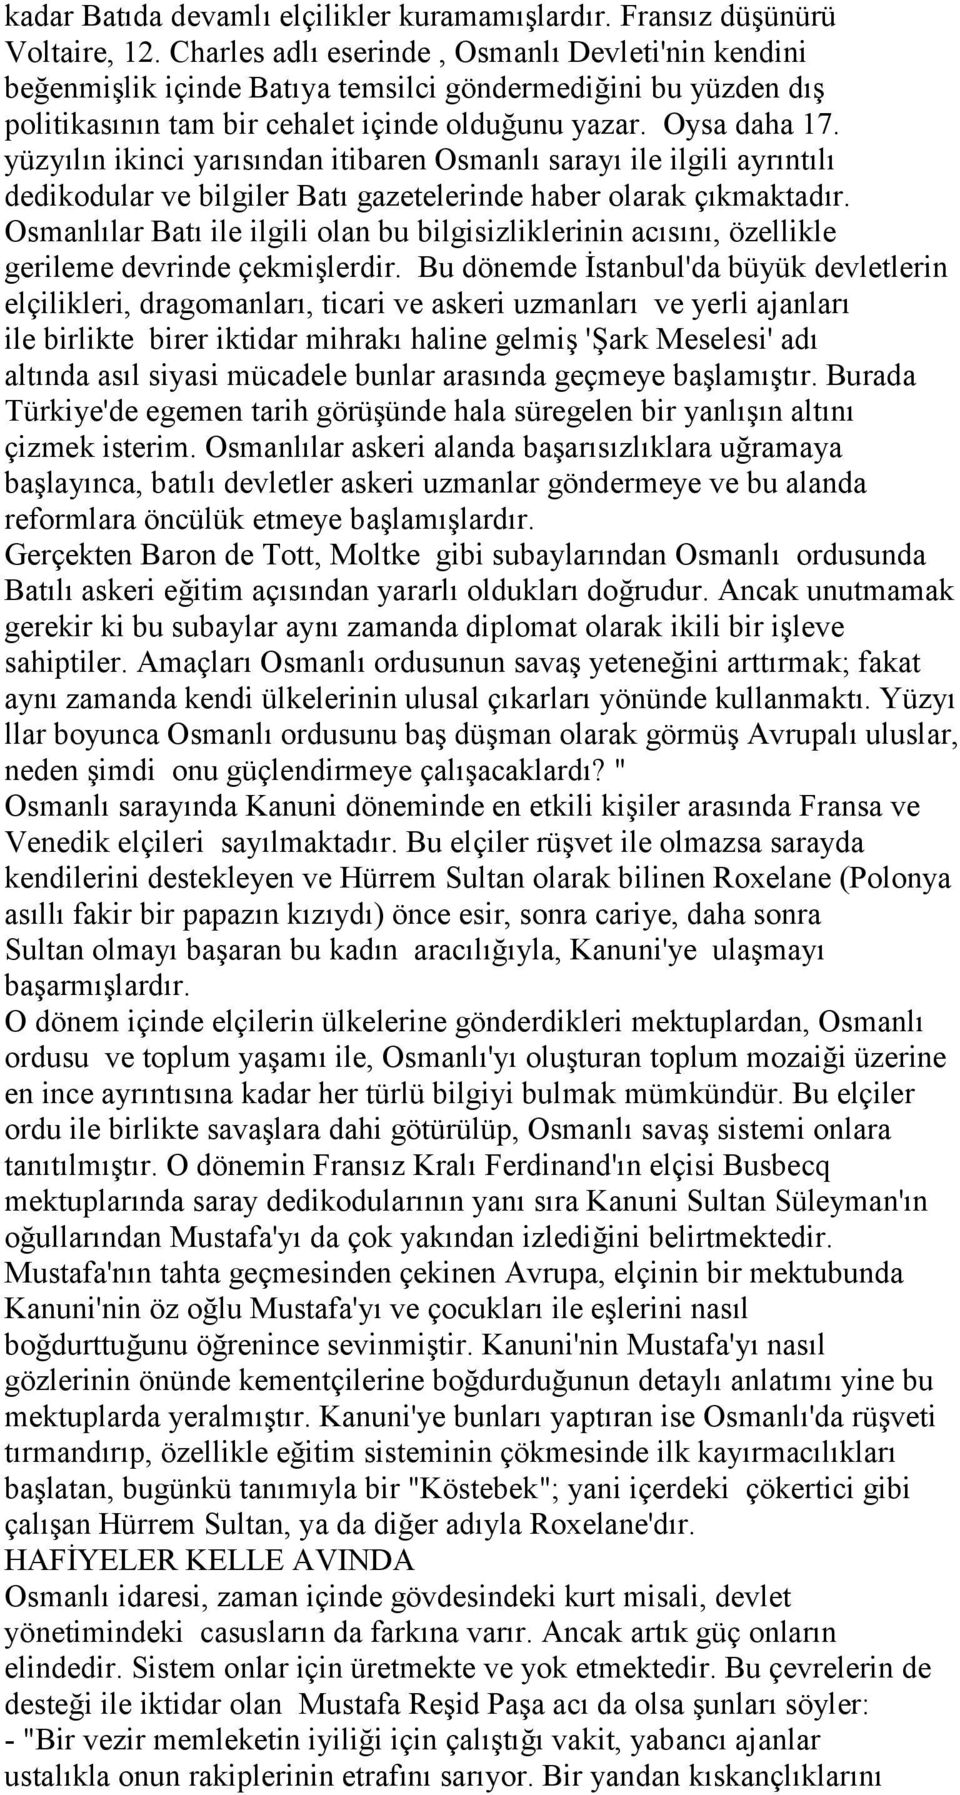 yüzyılın ikinci yarısından itibaren Osmanlı sarayı ile ilgili ayrıntılı dedikodular ve bilgiler Batı gazetelerinde haber olarak çıkmaktadır.